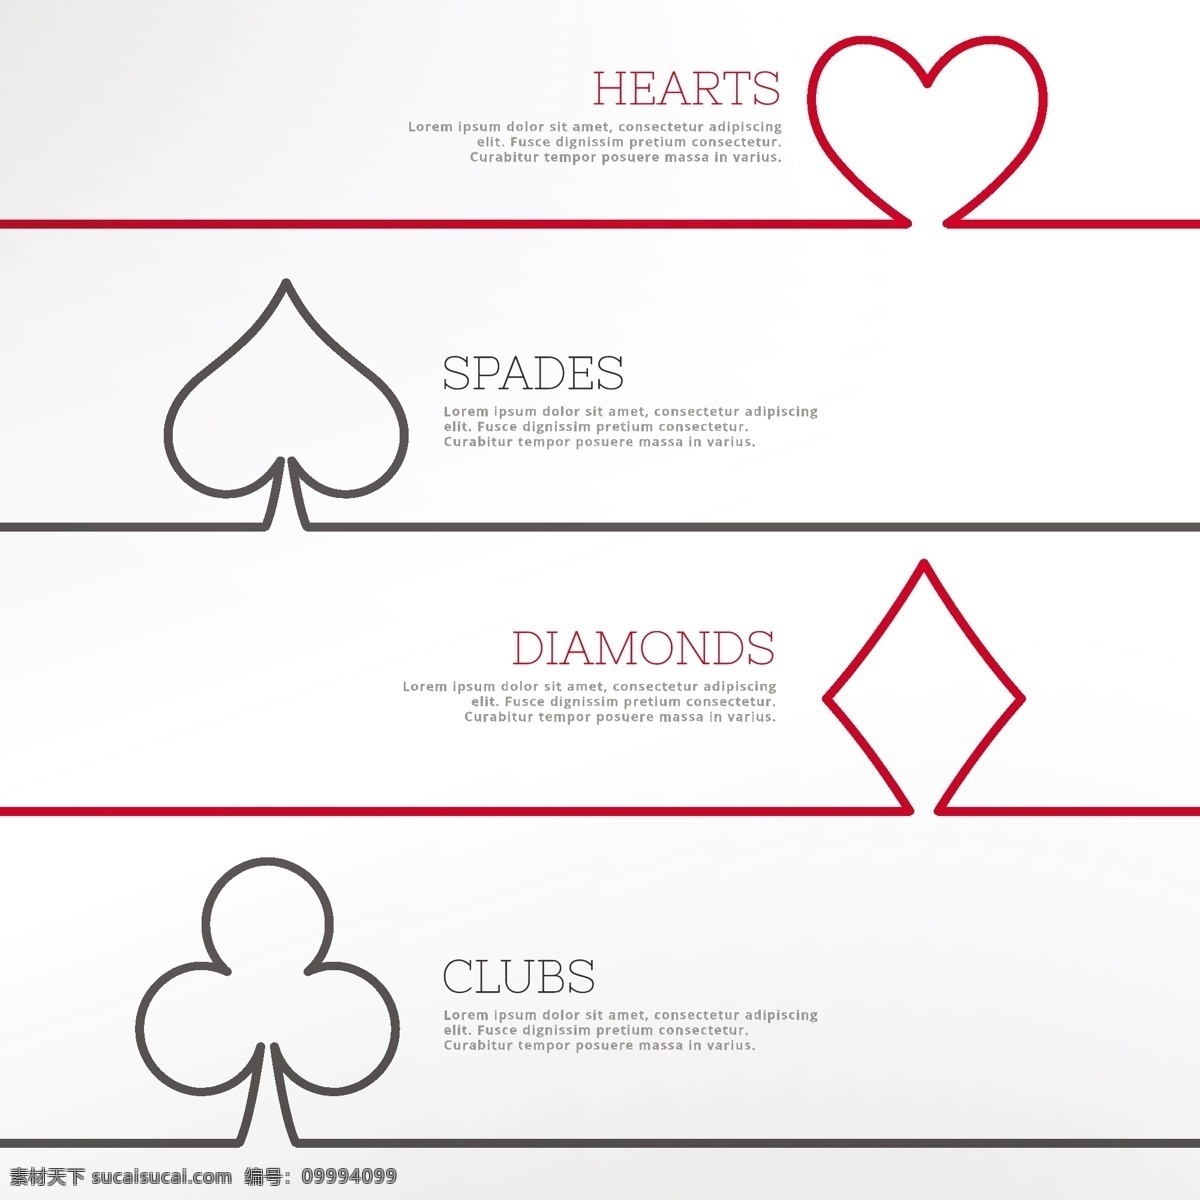 赌场卡的种类 背景 心脏 卡片 红色 钻石 黑色 游戏 形状 成功 赢家 白色 赌场 扑克 胜利 竞争 俱乐部 元素 风险